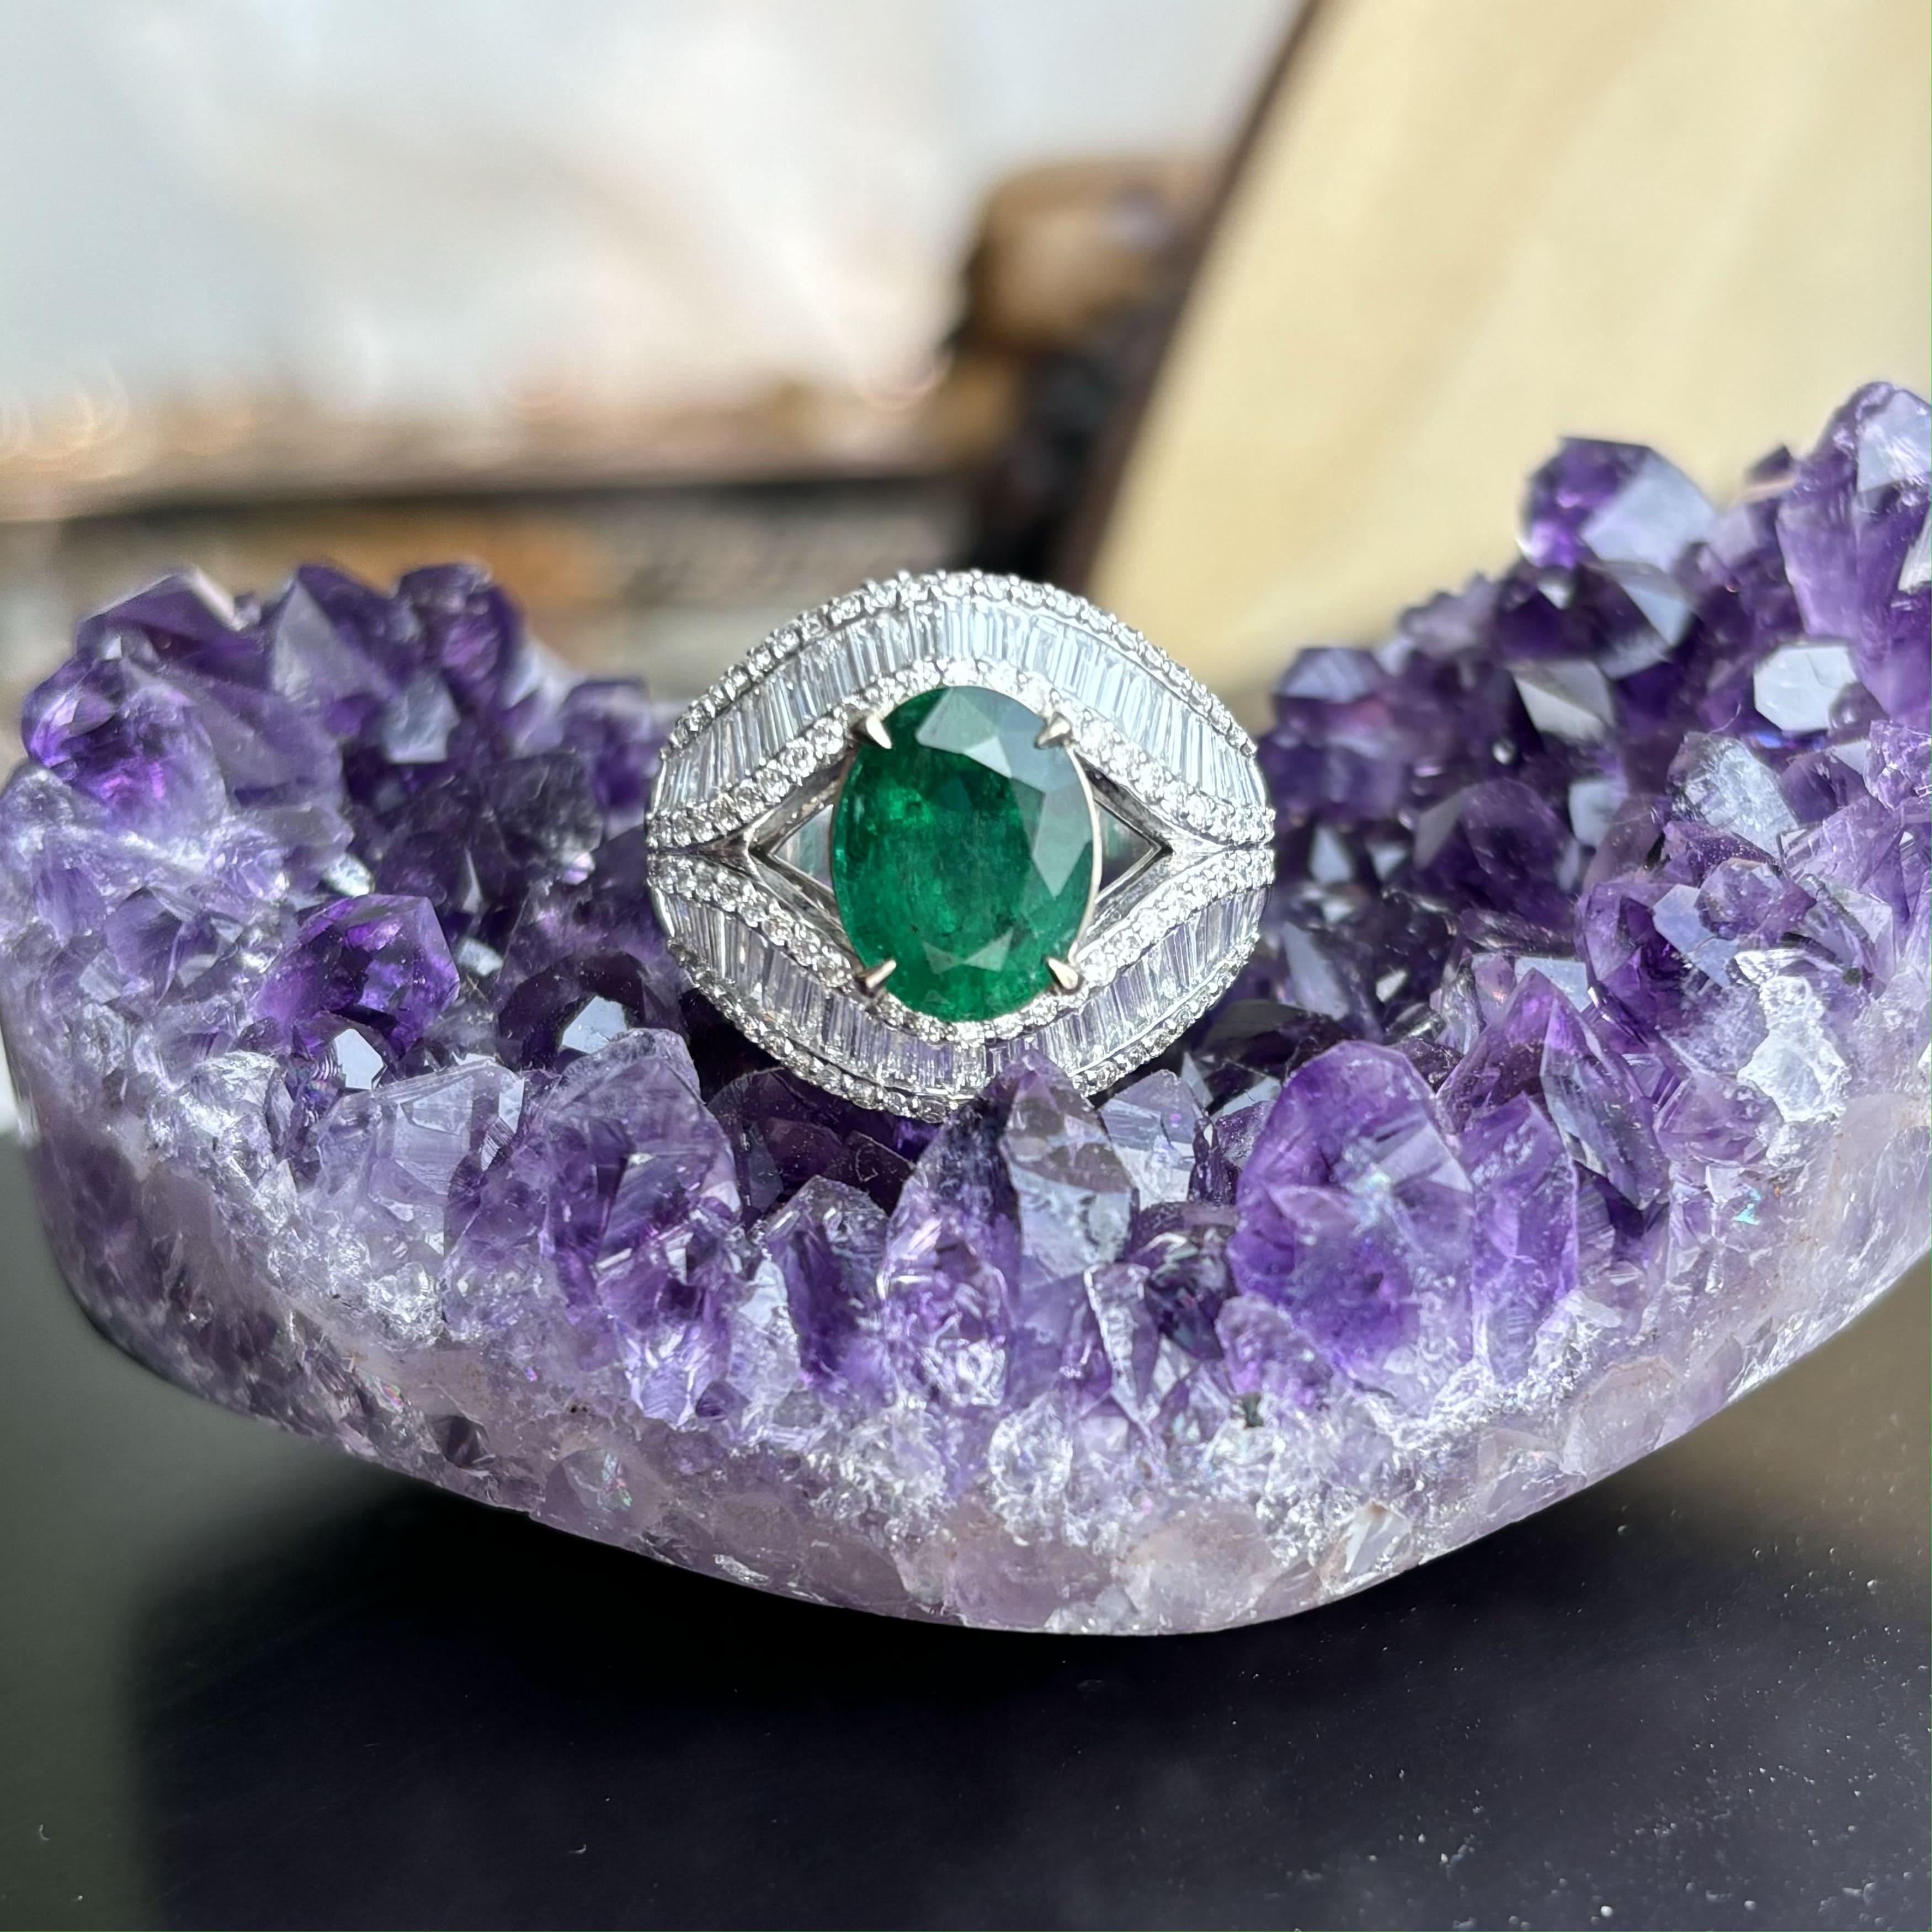 Wir präsentieren ein Meisterwerk von einem Ring, der die lebhafte grüne Eleganz eines sorgfältig geschliffenen Smaragds mit der Brillanz funkelnder Baguette-Diamanten perfekt kombiniert.

Der 2.56-karätige Smaragd stammt aus den bezaubernden Minen